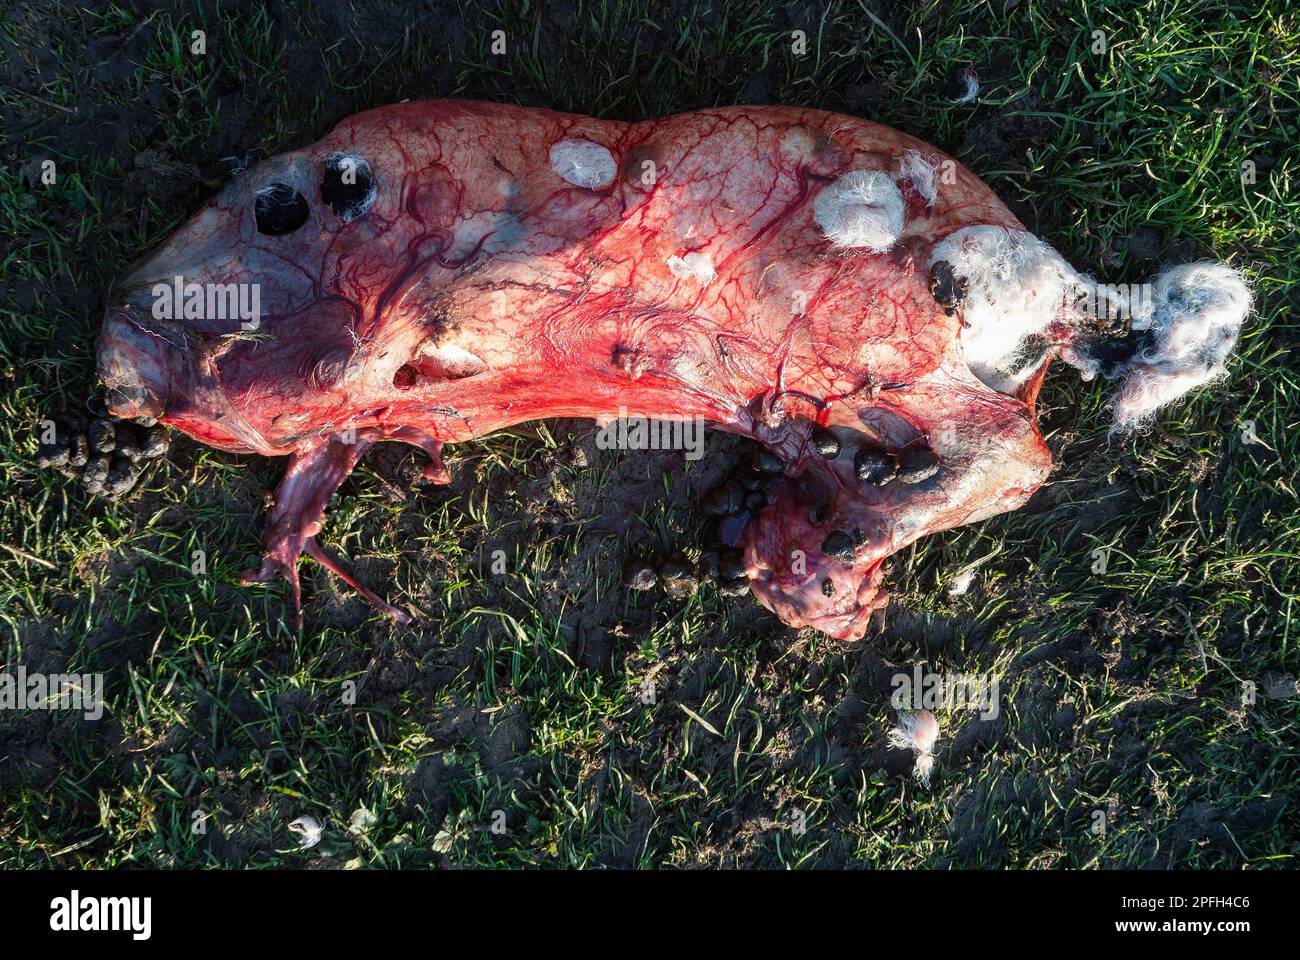 Stillborn lamb still covered in placenta. Stock Photo